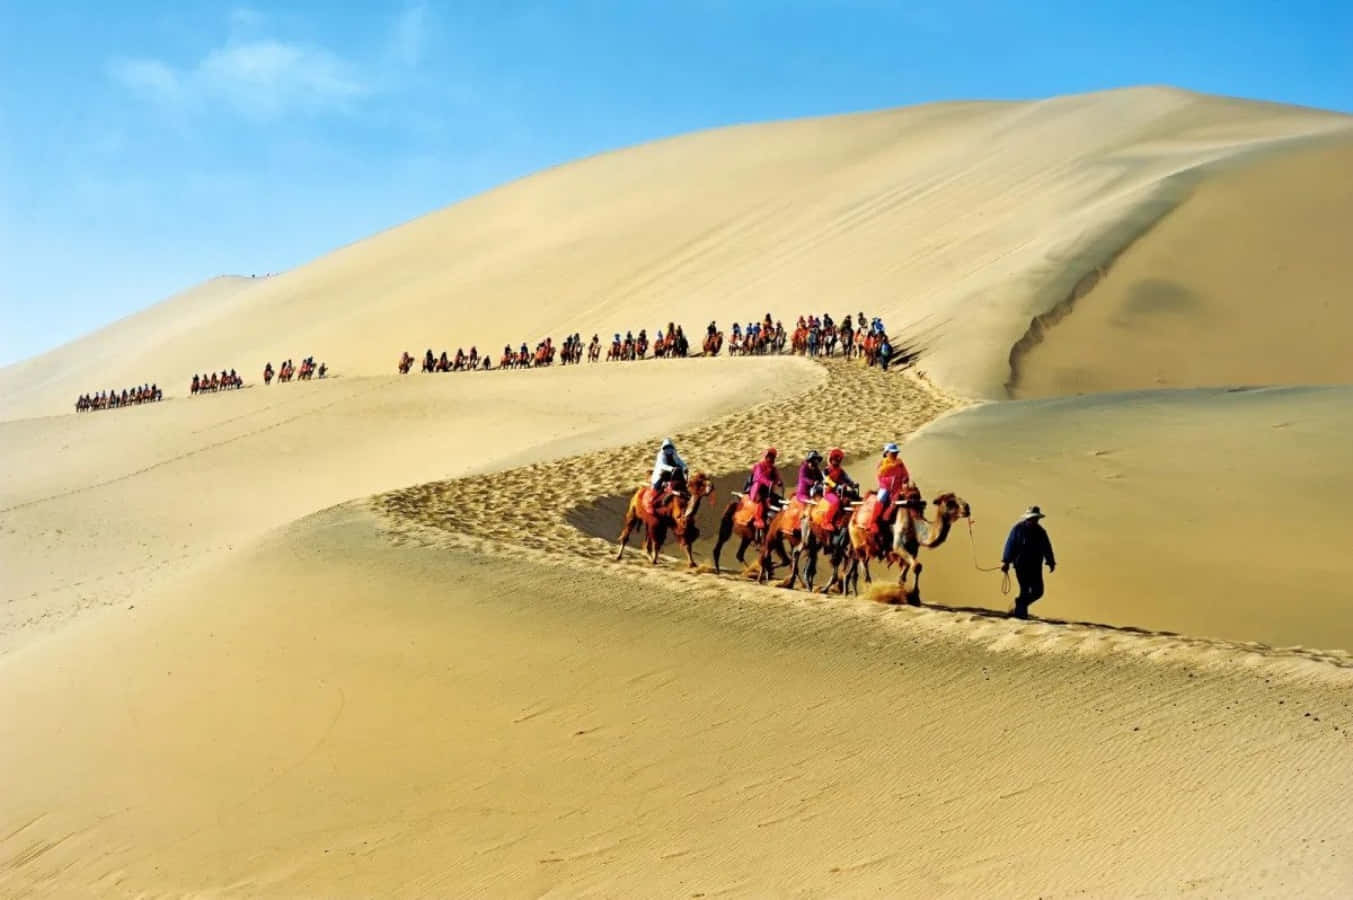 Einegruppe Von Menschen Reitet Auf Kamelen In Der Wüste.